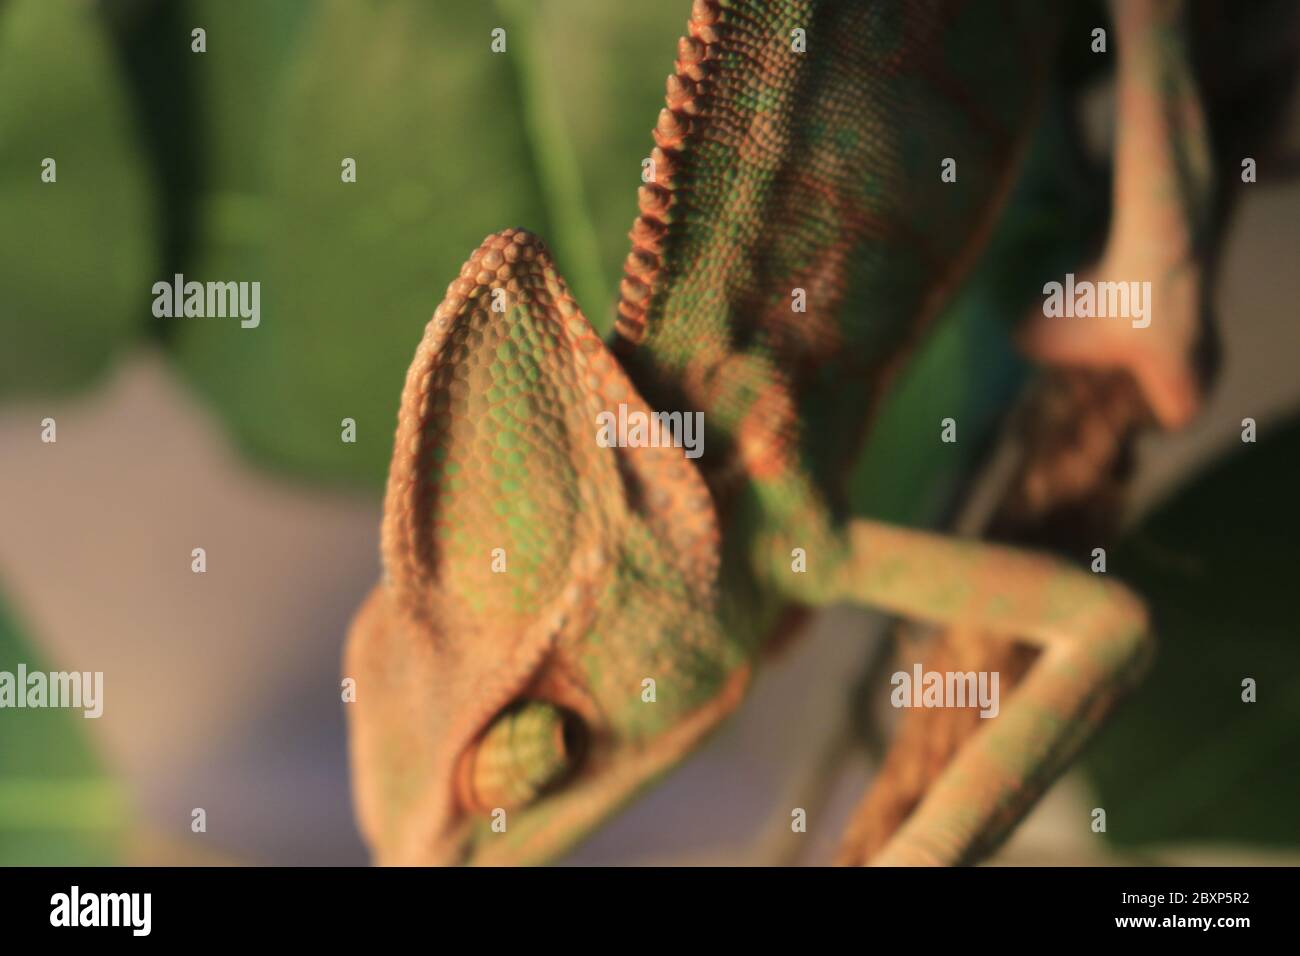 Veiled Chameleon on plant against green background/Yemen Chameleon/Veiled Chameleon (Chamaeleo Calyptratus) Stock Photo